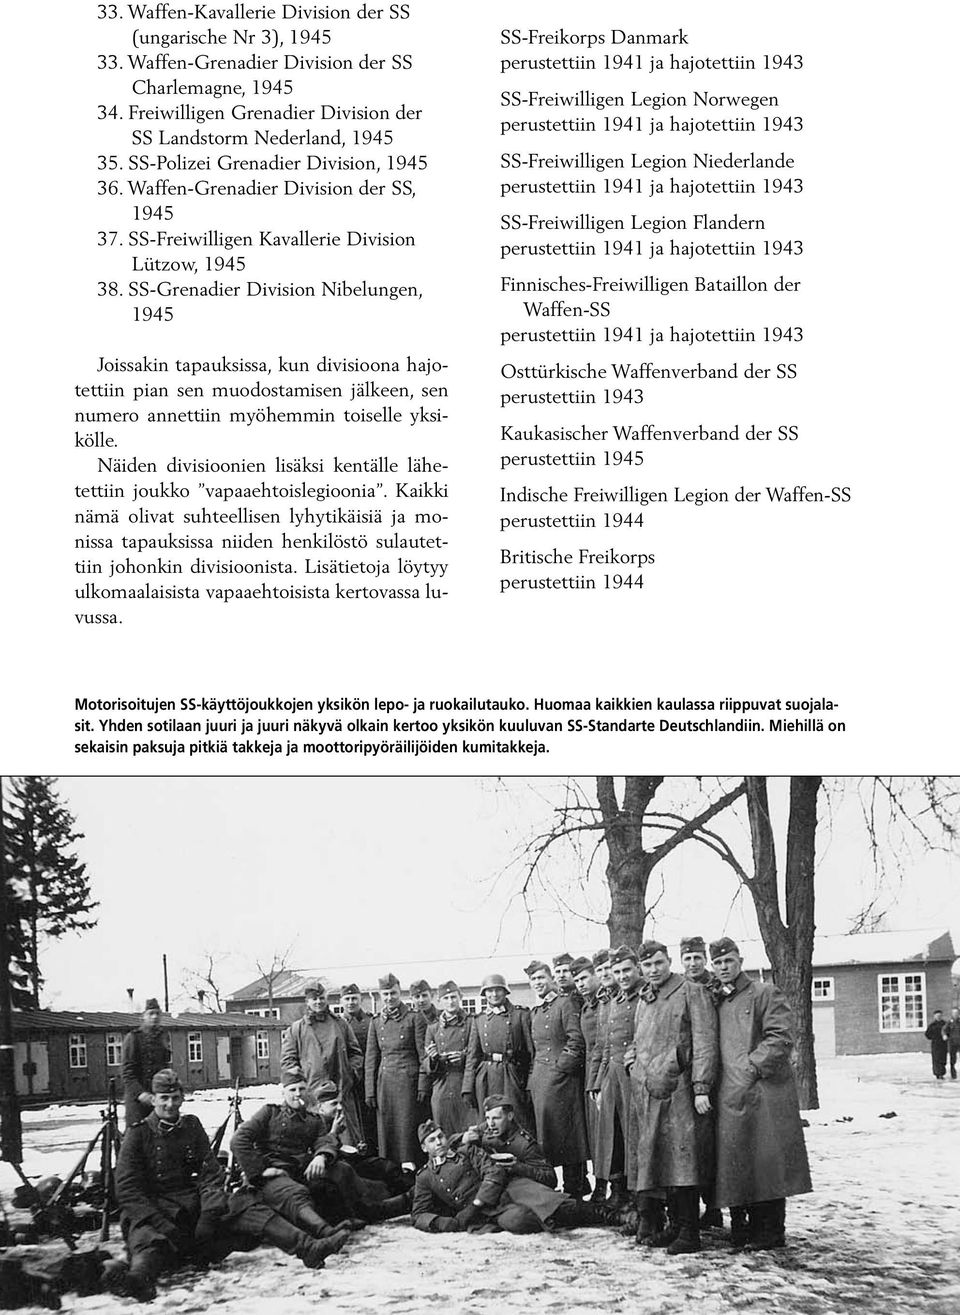 SS-Grenadier Division Nibelungen, 1945 Joissakin tapauksissa, kun divisioona hajotettiin pian sen muodostamisen jälkeen, sen numero annettiin myöhemmin toiselle yksikölle.